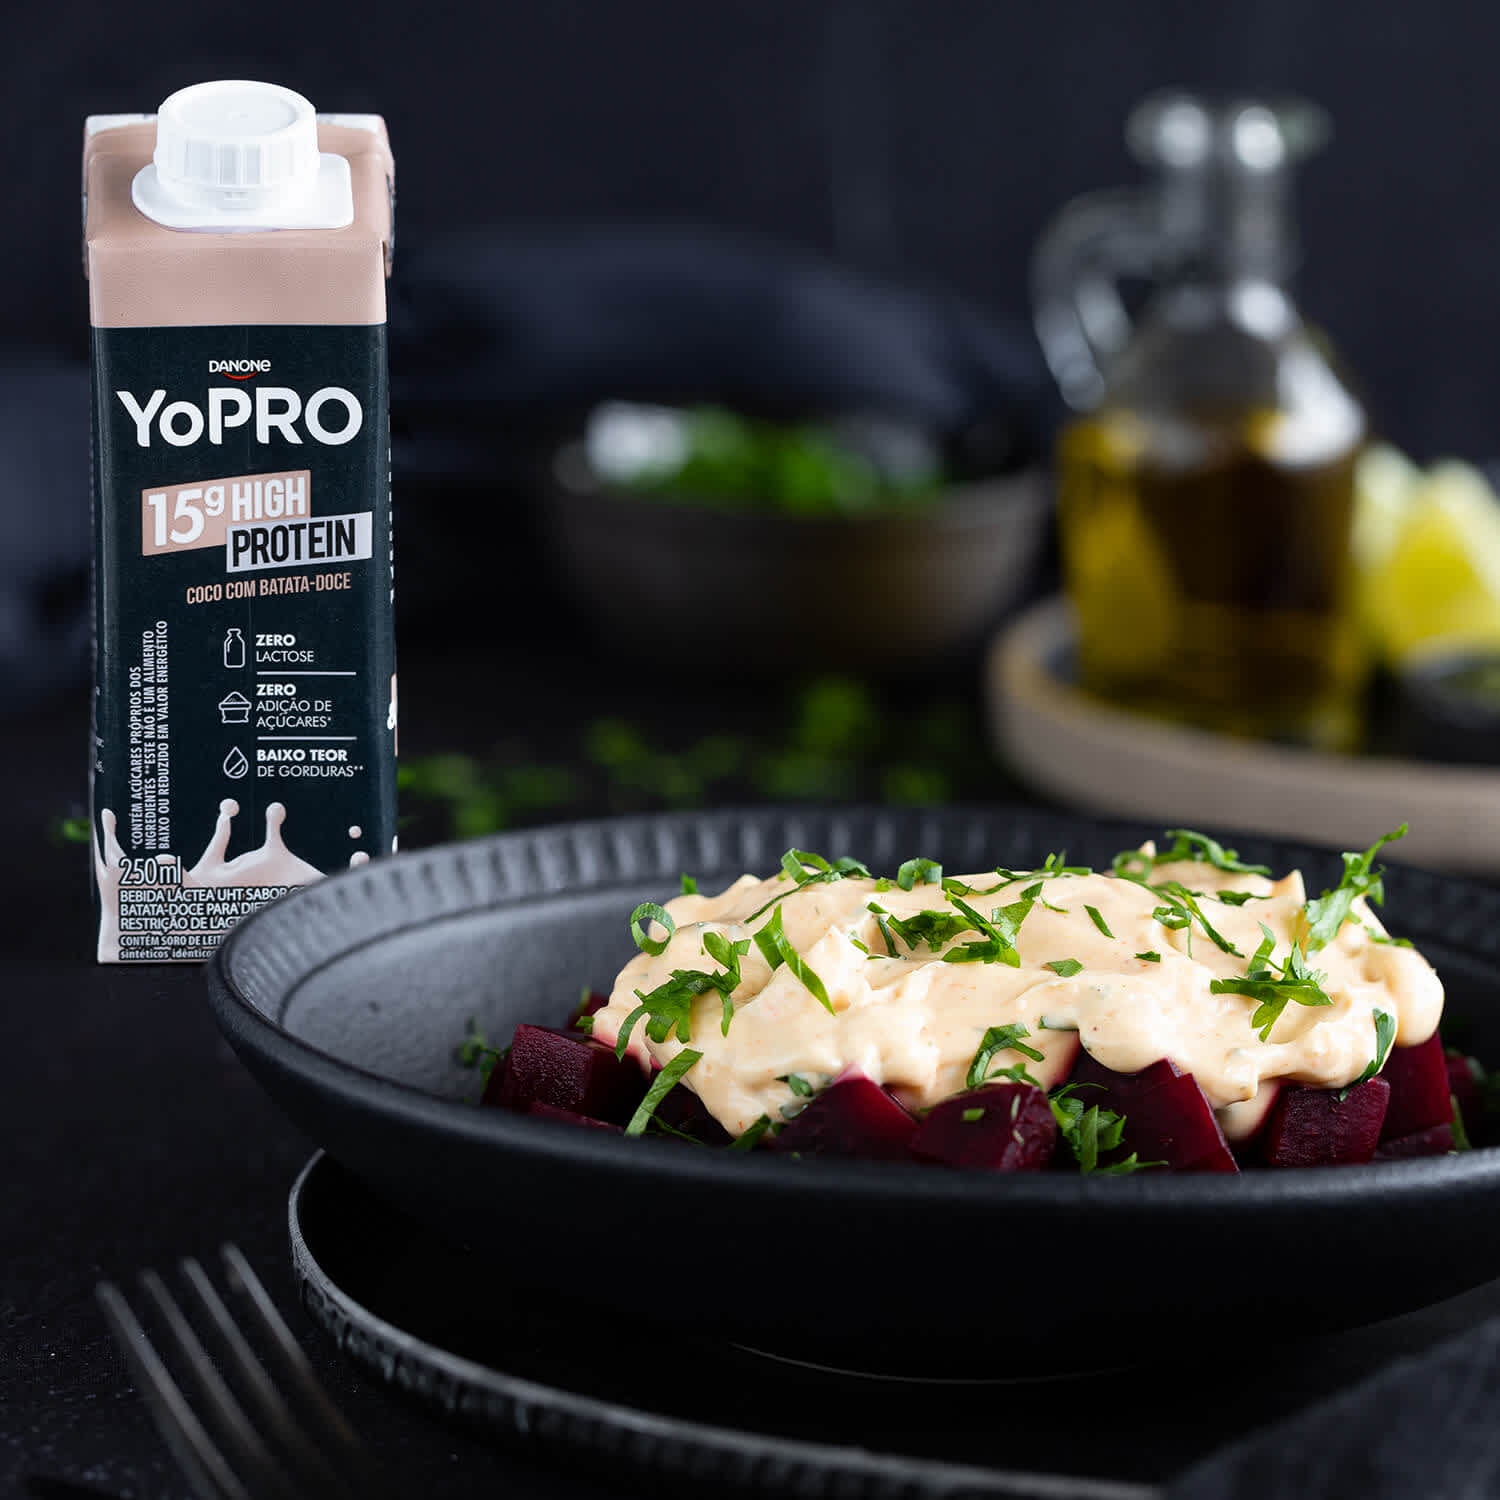 Confira essa receita de Salada de Beterraba com maionese YoPRO. Ótima pra acompanhar seu almoço!